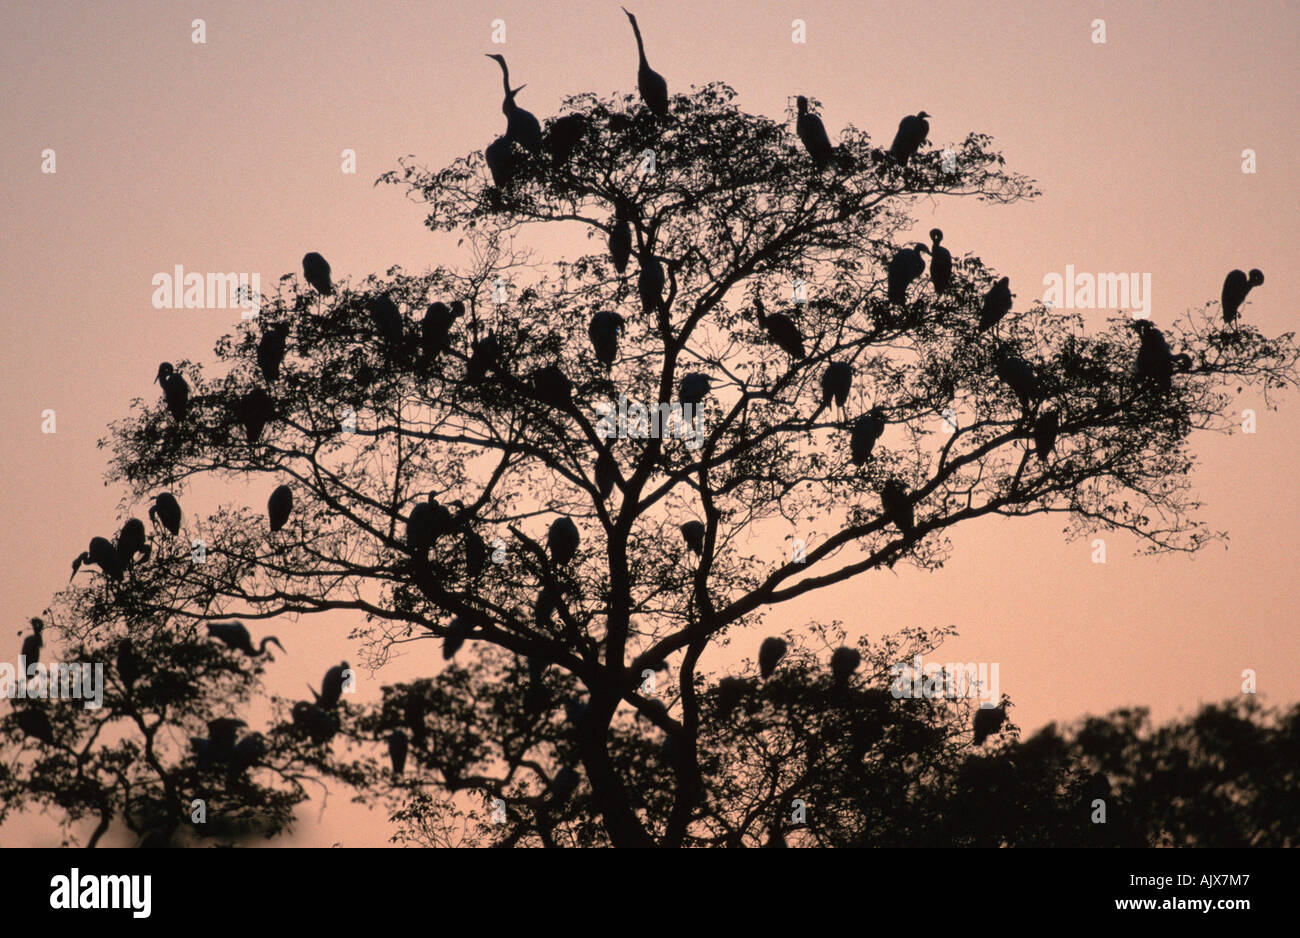 Herons sleeping on tree / Reiher schlafen auf Baum Stock Photo